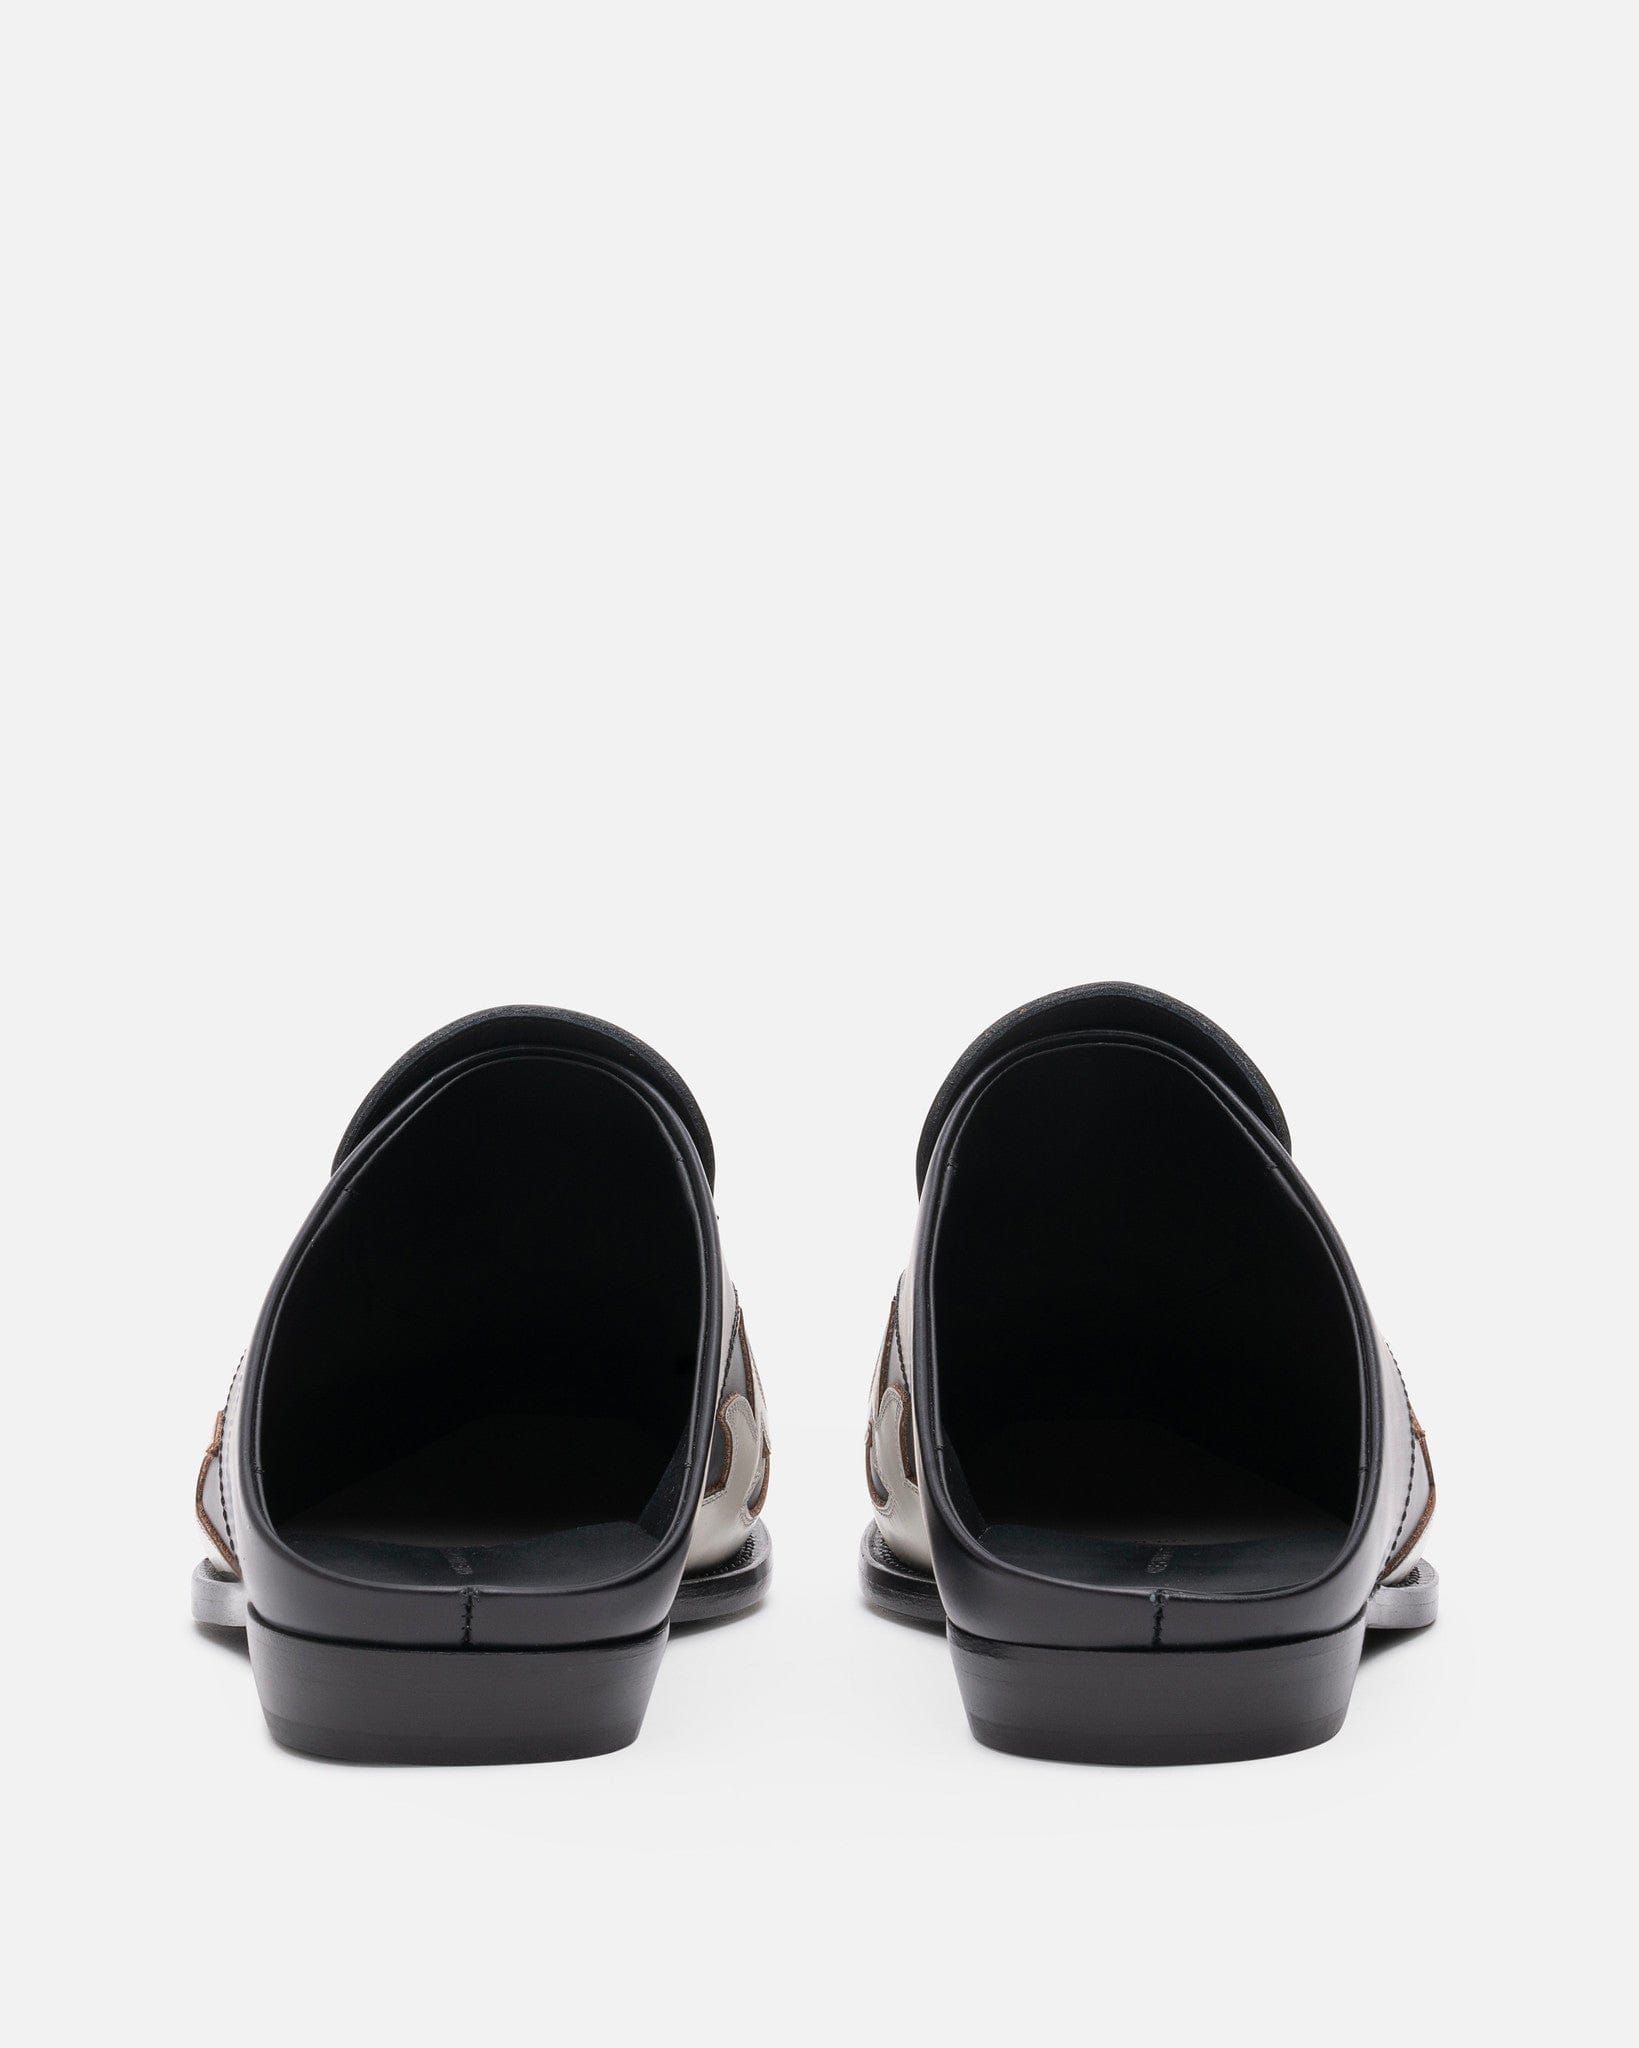 Dries Van Noten Men's Shoes Slip-on Loafer in Black